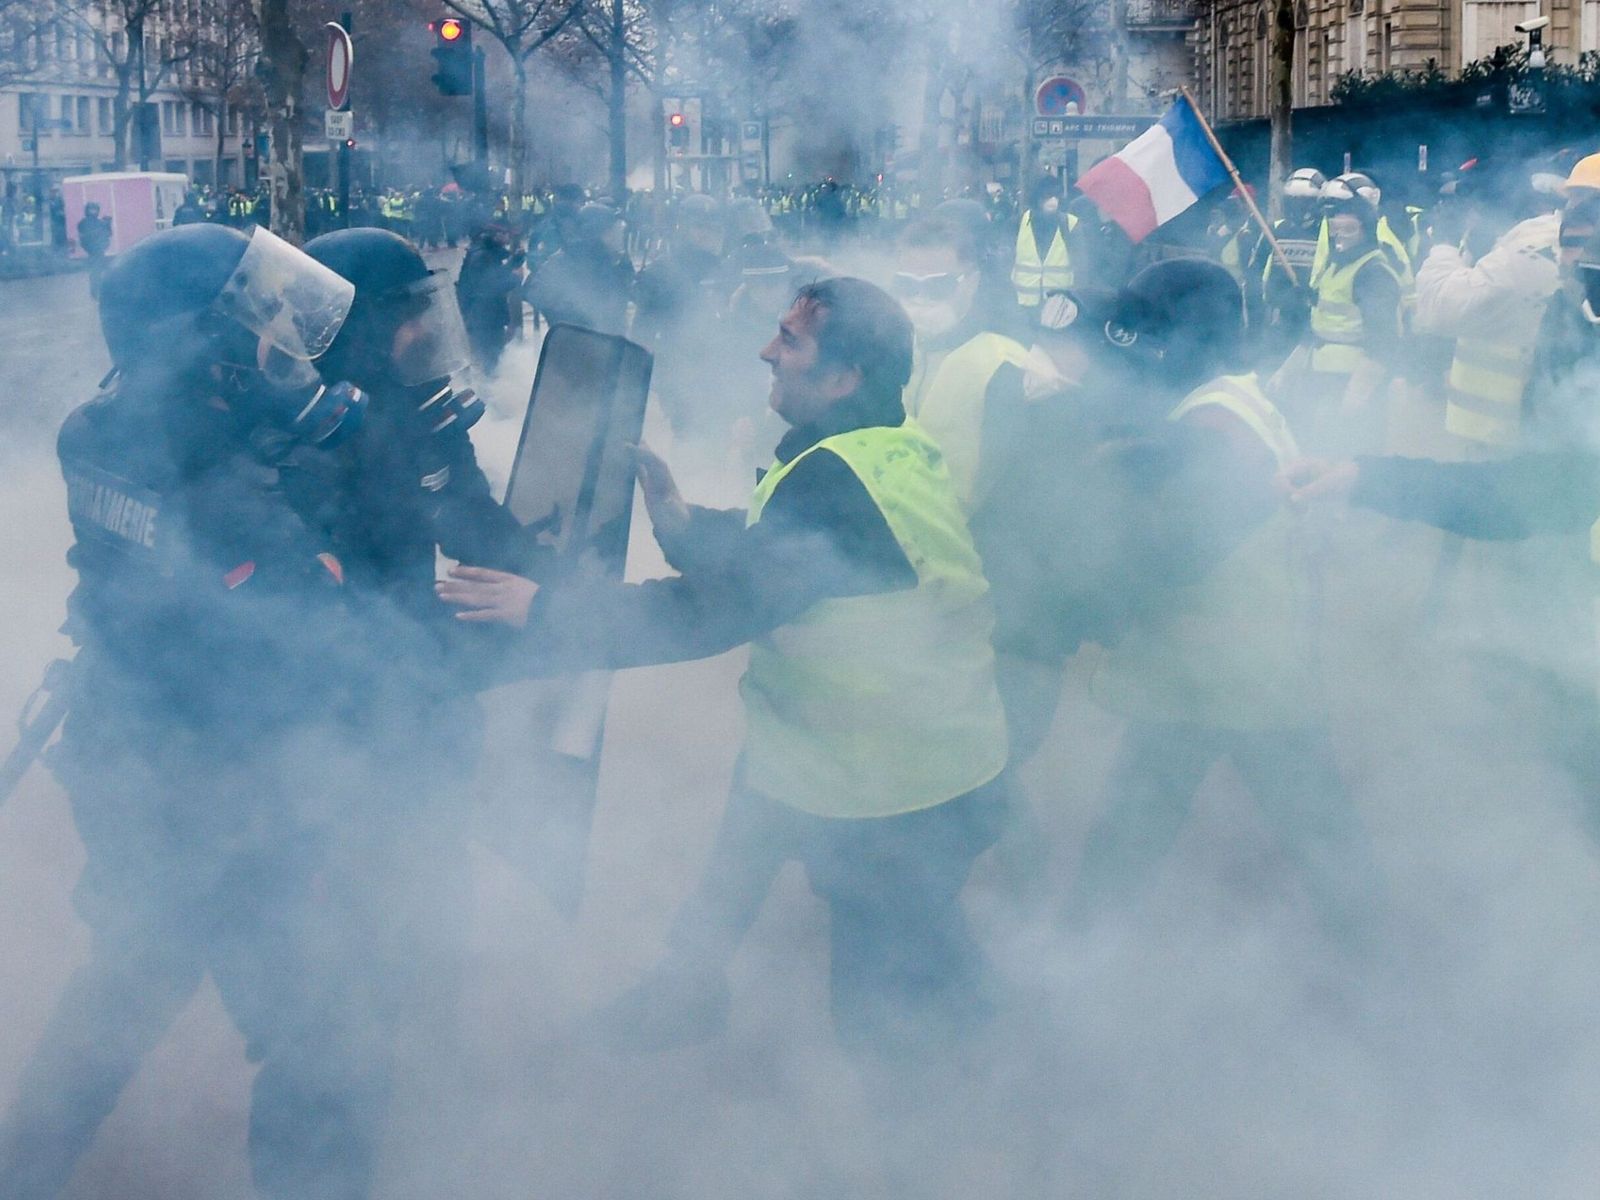 十年来最严重的骚乱席卷法国巴黎 抗议者打砸抢造成凯旋门受损-今日头条